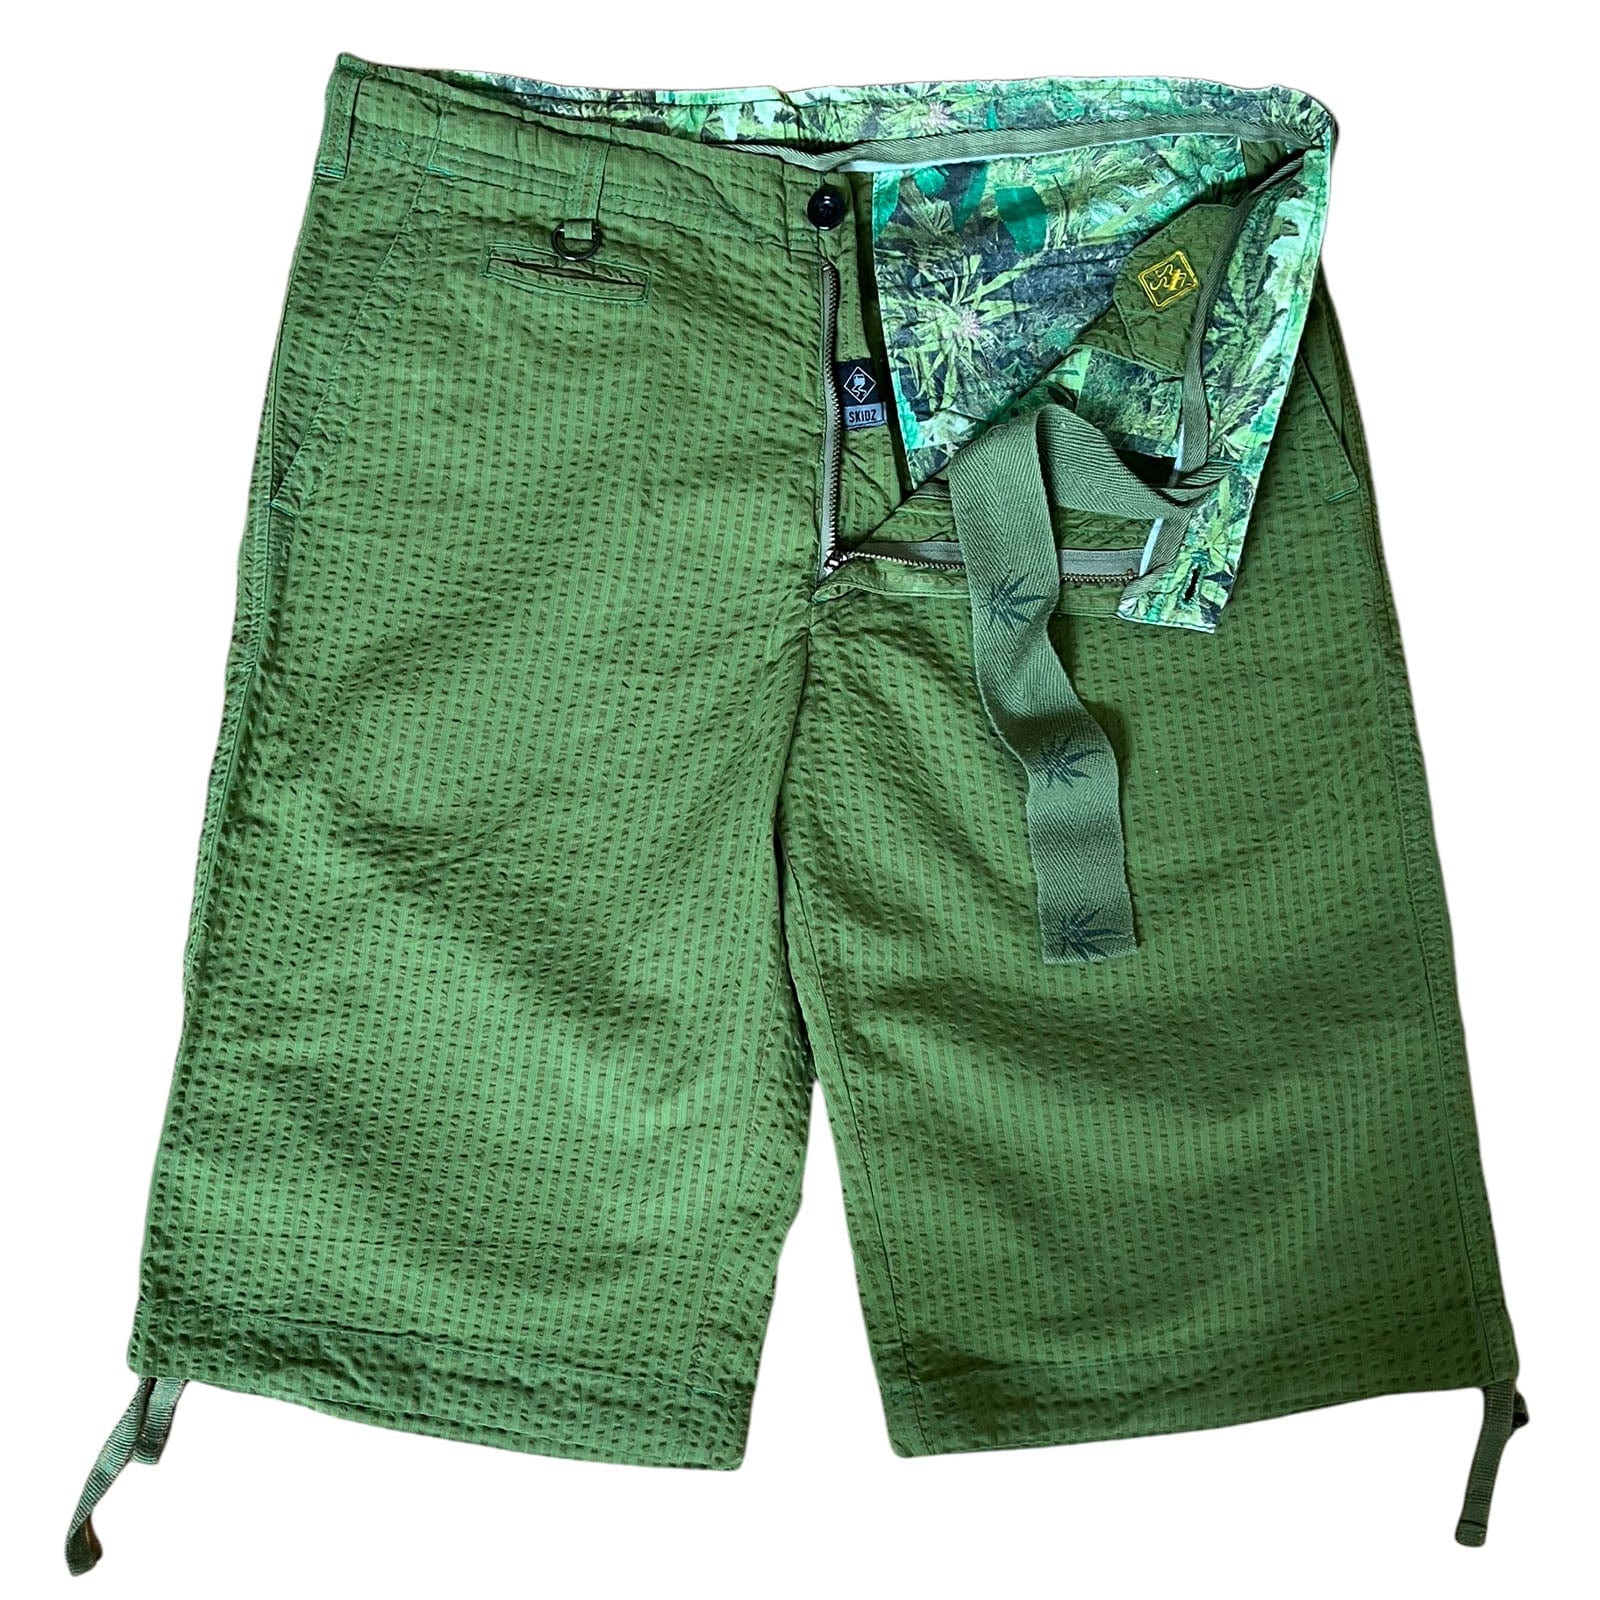 SKIDZ Shorts Seersucker Shorts - Green Striped